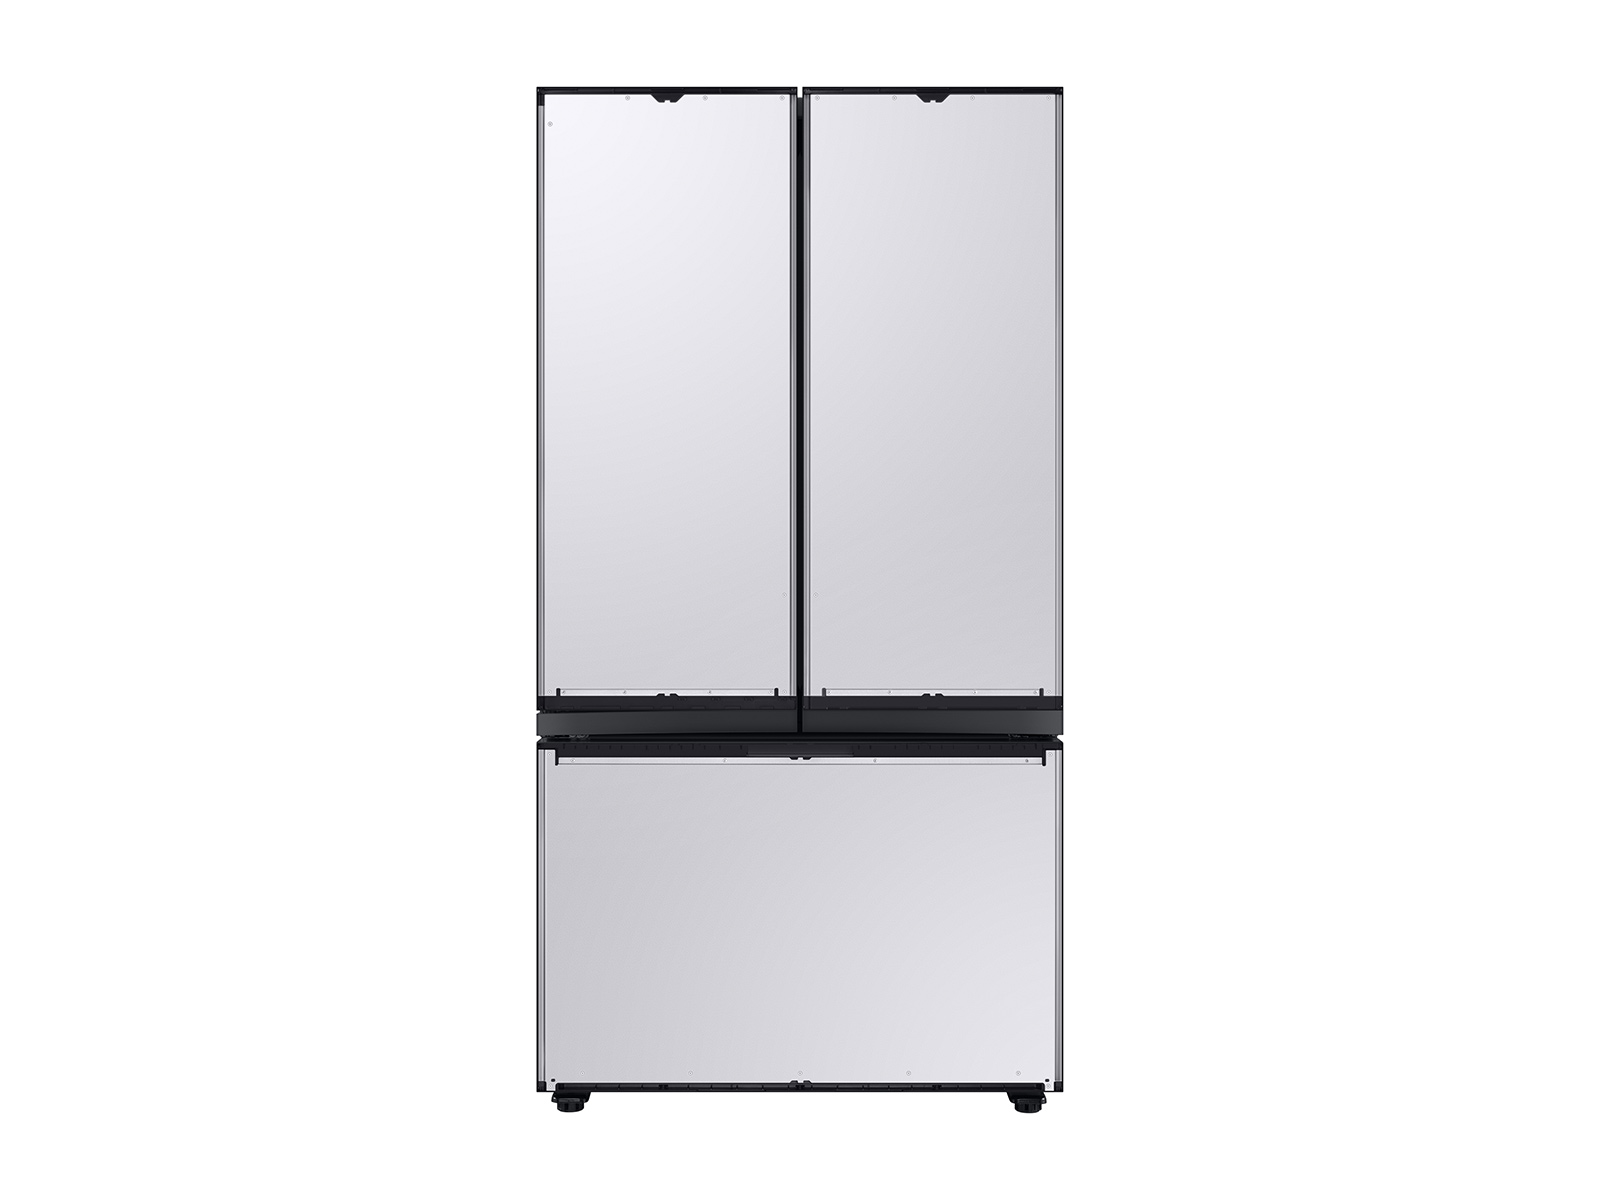 Bespoke 3-Door French Door Refrigerator (24 cu. ft.) with Customizable Door Panel Colors and Beverage Center&trade;